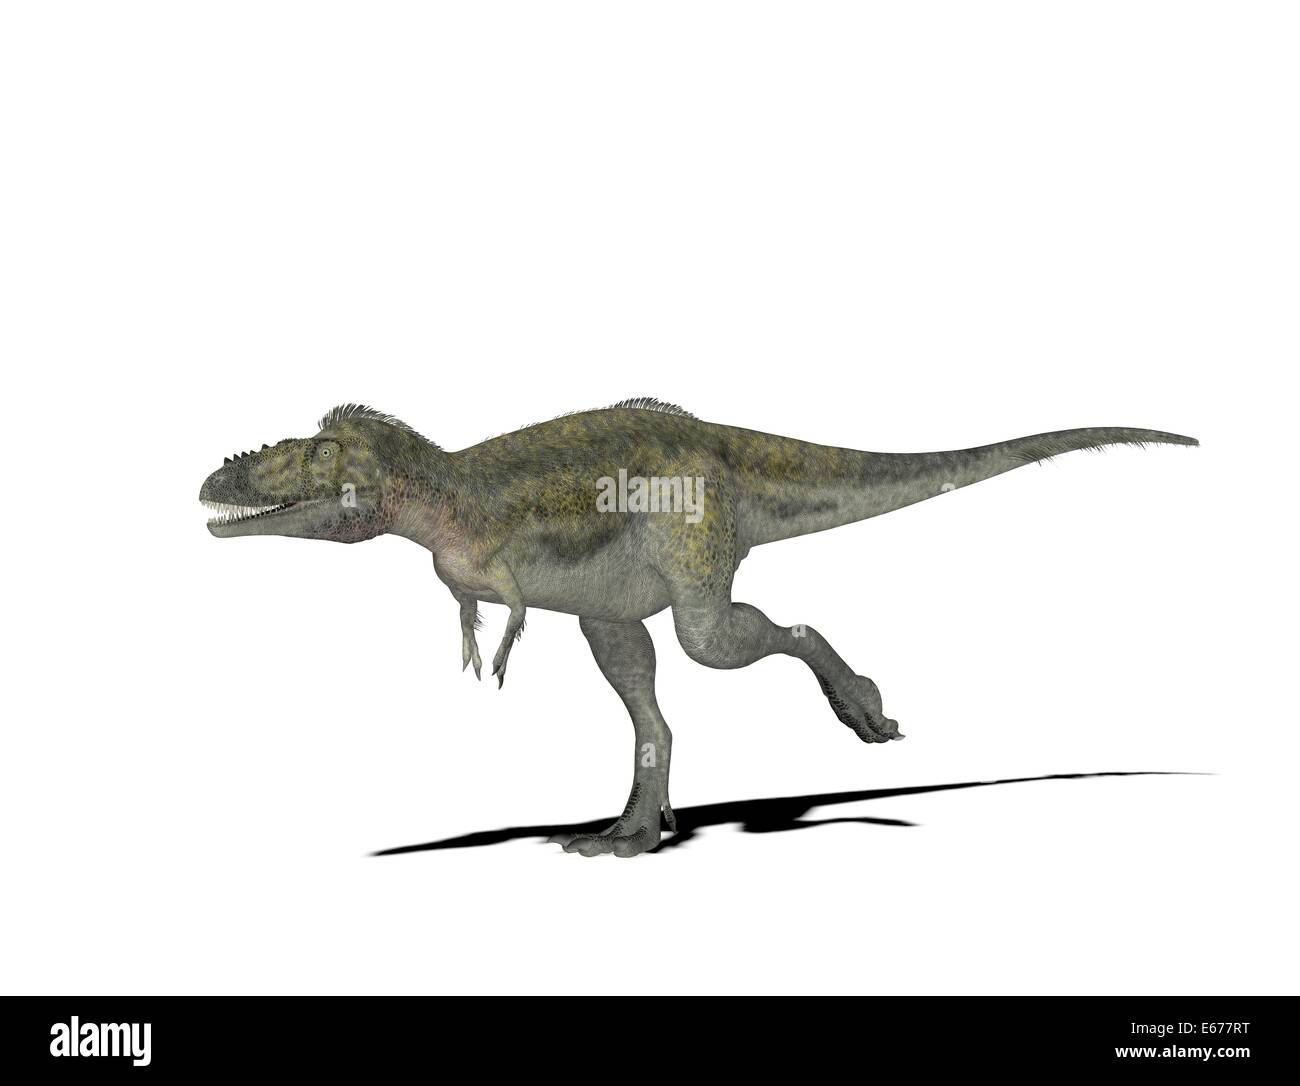 Dinosaurier Alioramus / dinosaur Alioramus Stock Photo